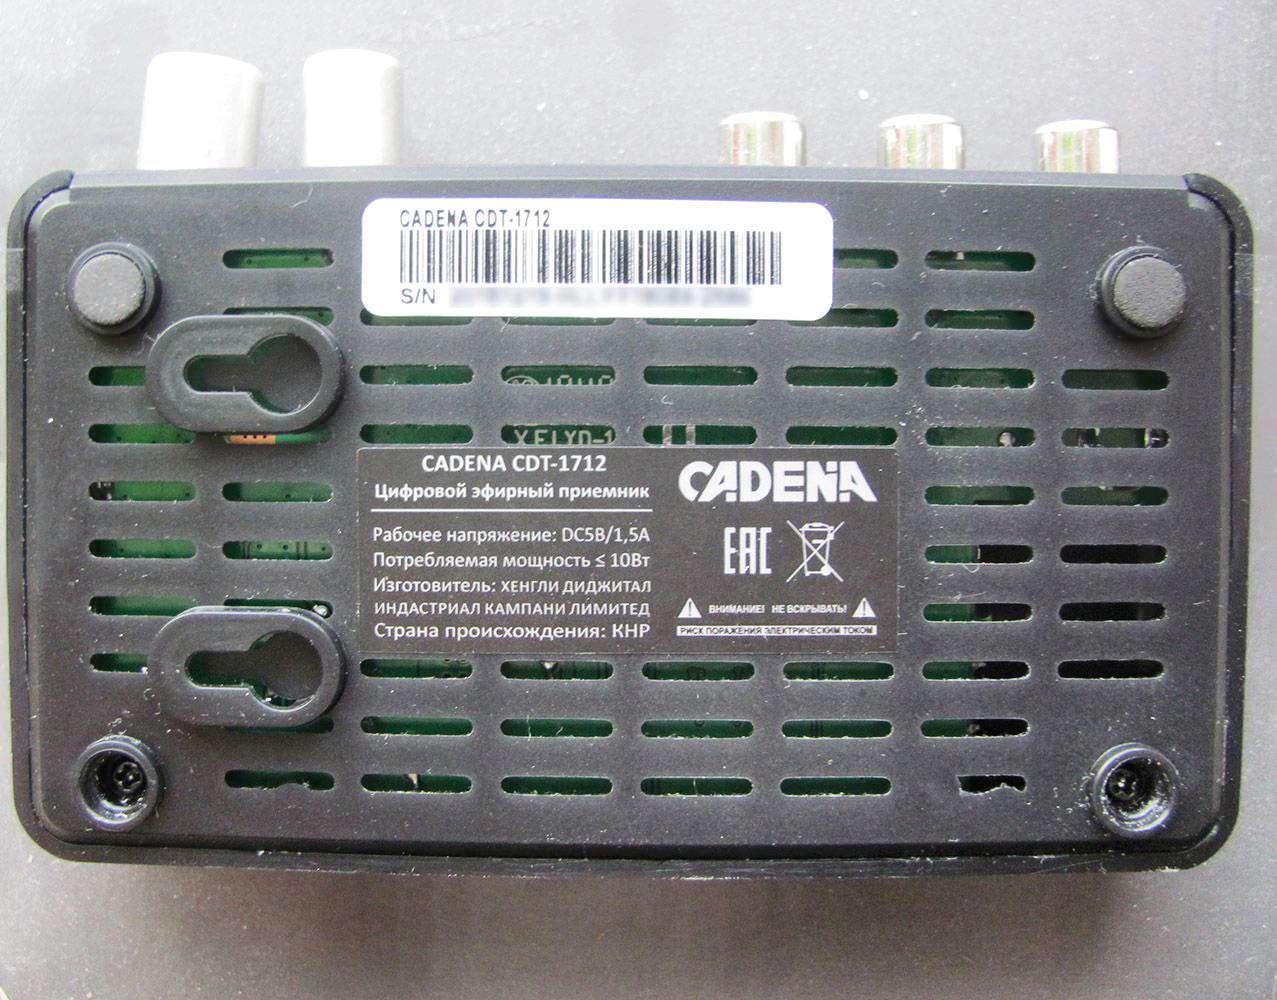 Обзор ресивера Cadena CDT-1712: инструкция и прошивка